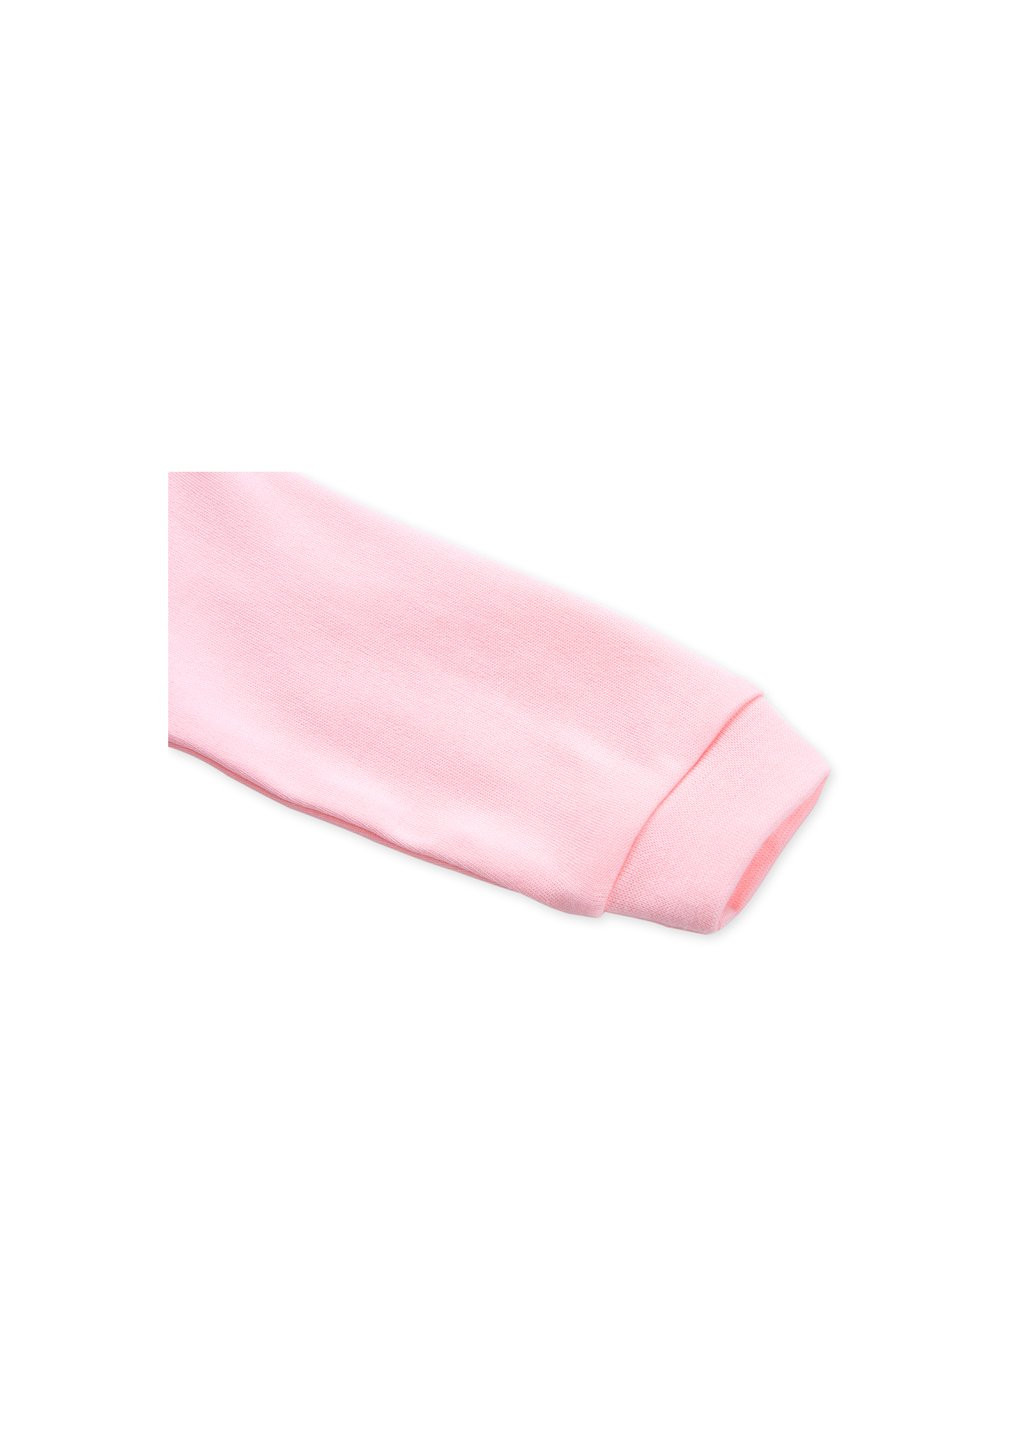 Чоловічок з бантиком (60089-50G-pink) BiBaby (257184887)